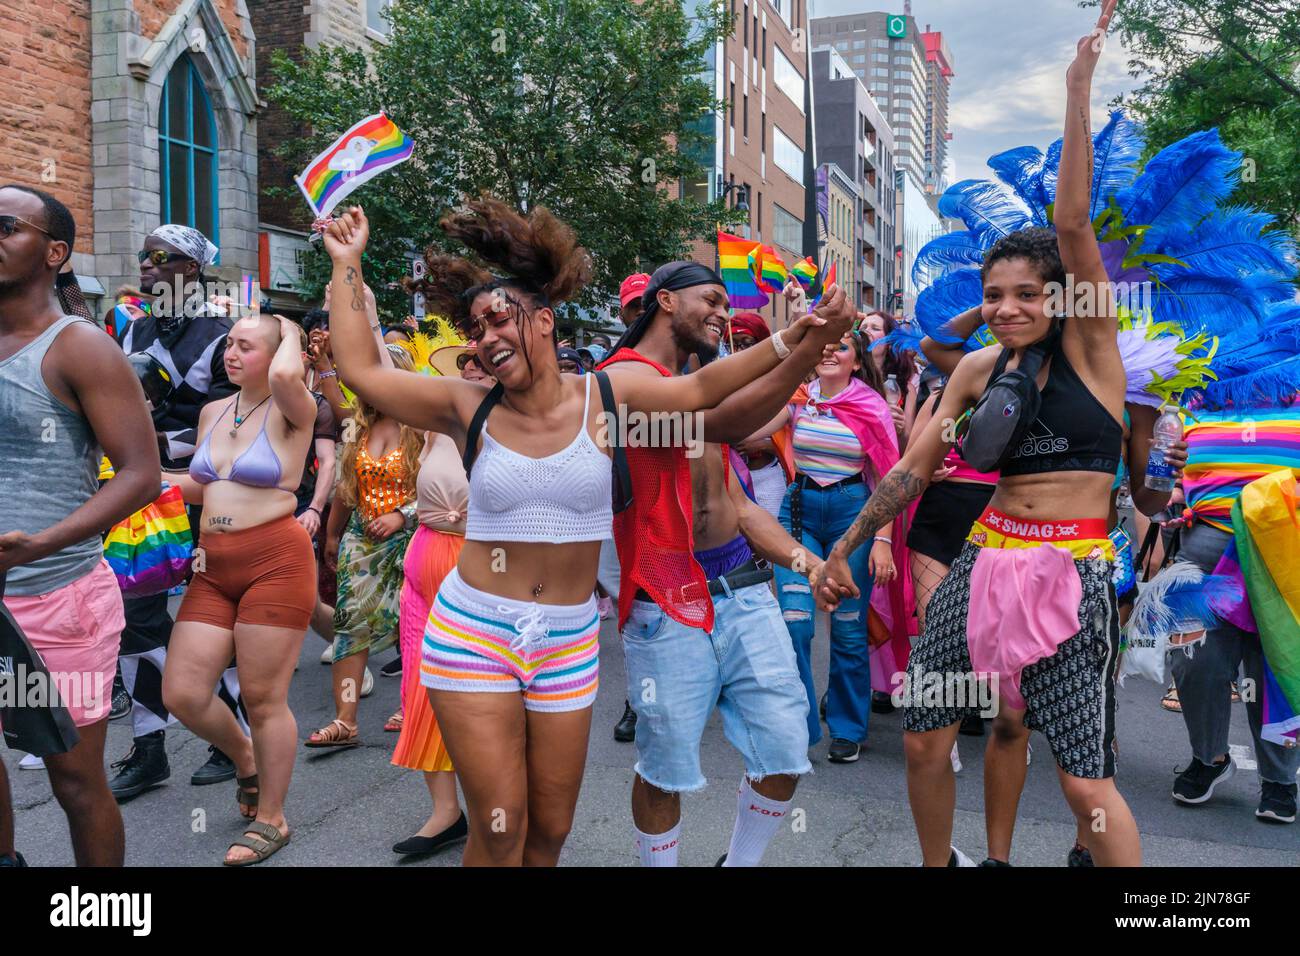 Montreal, CA - 7 de agosto de 2022: Jóvenes bailando durante la marcha espontánea del orgullo gay después de que el desfile oficial del orgullo fuera cancelado Foto de stock